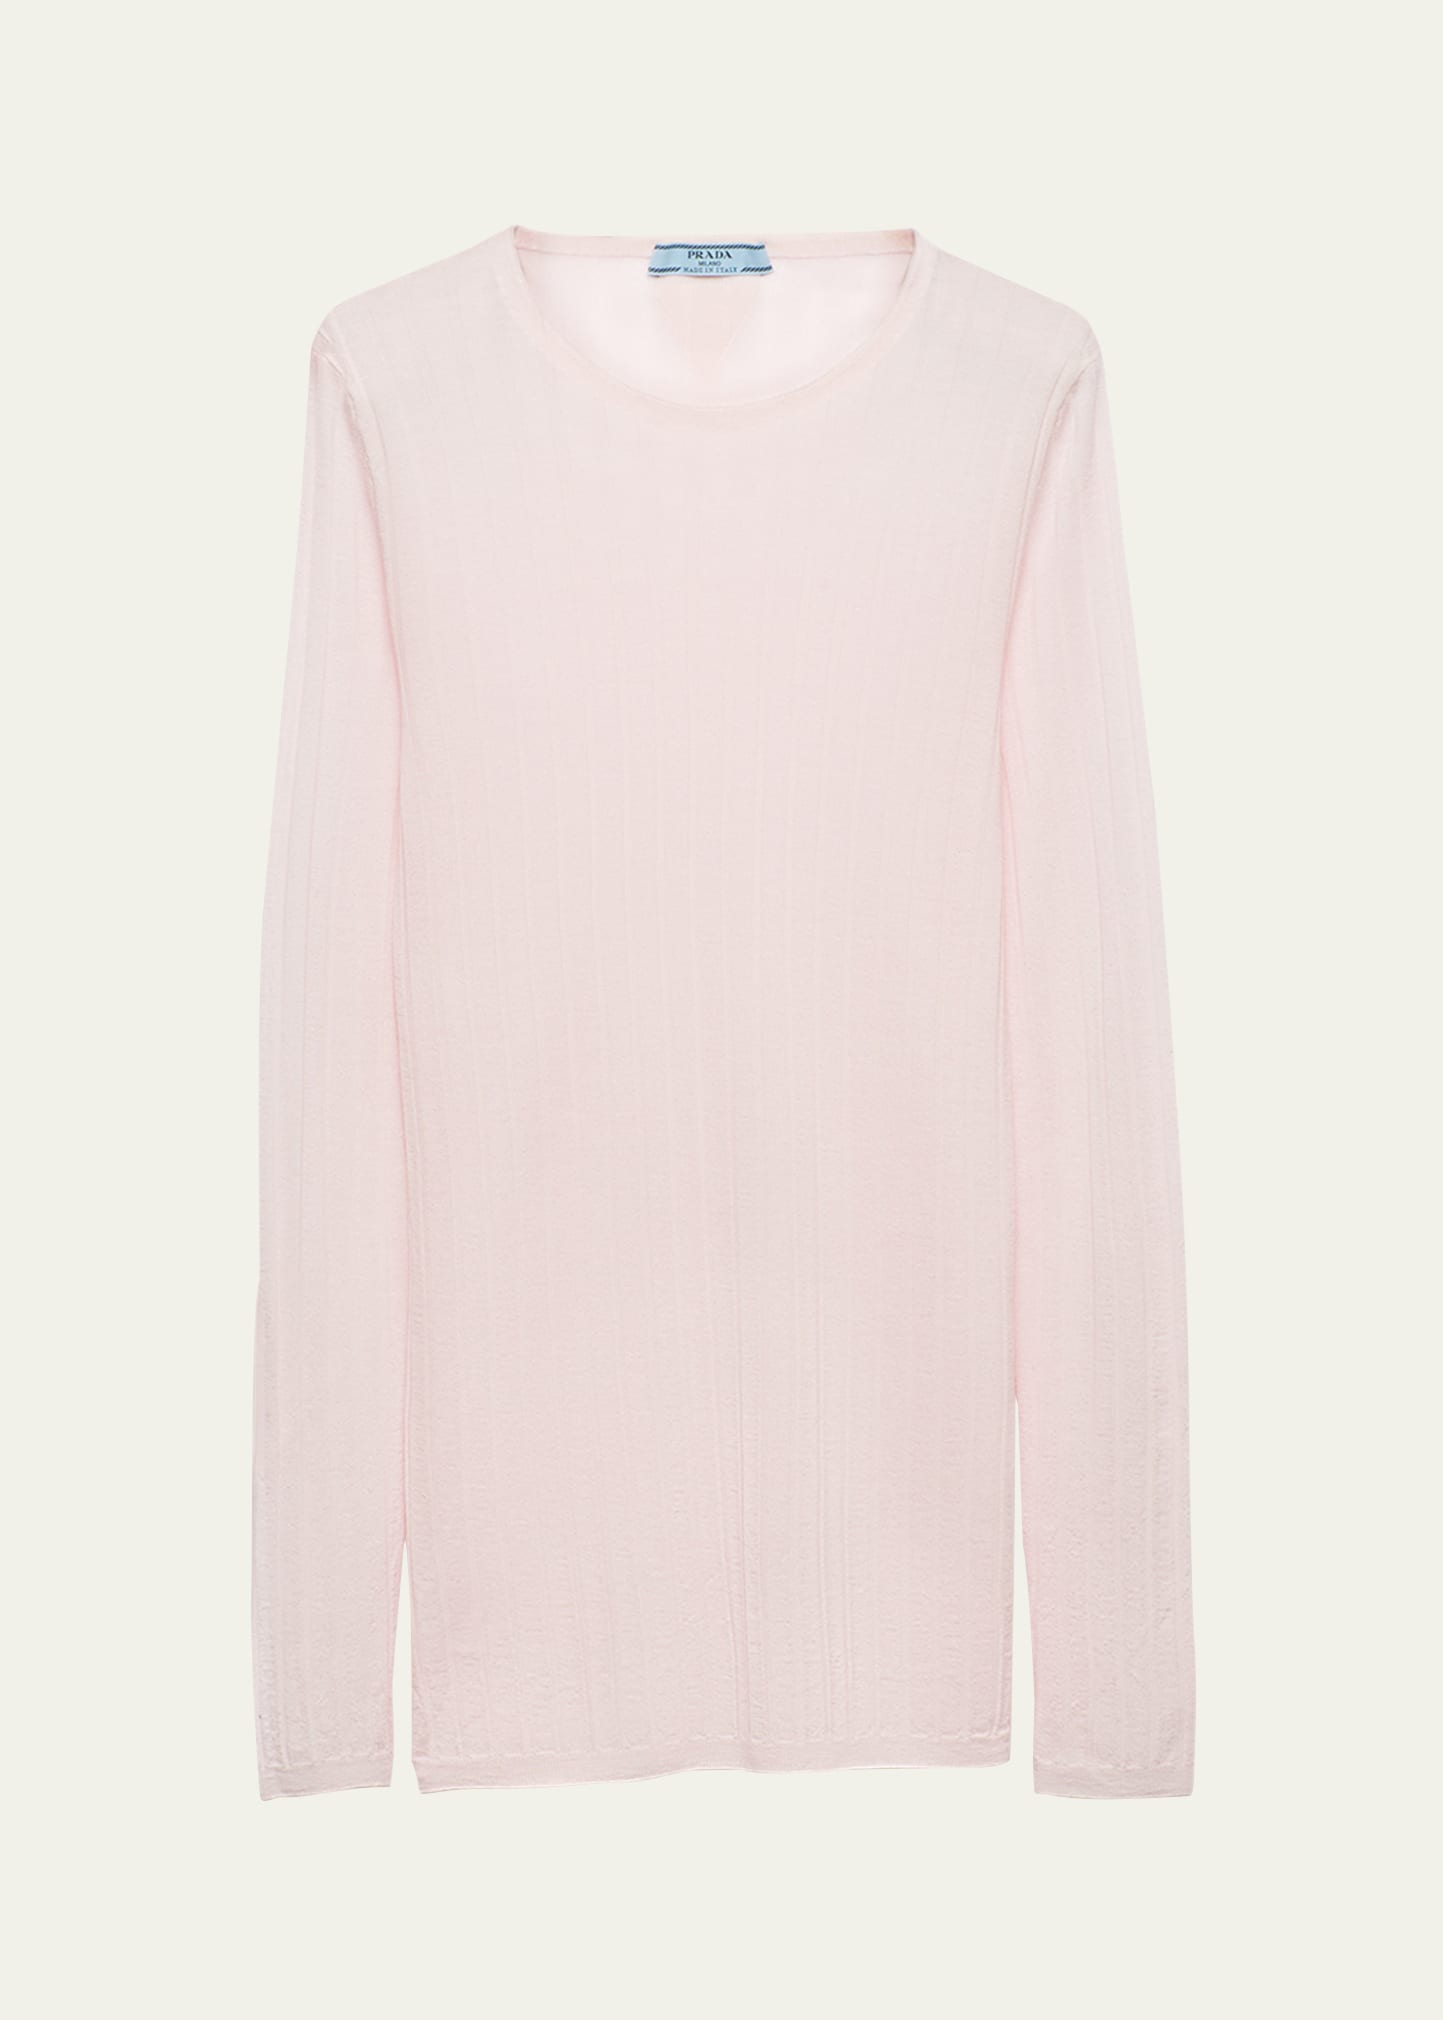 Shop Prada Superfine Cashmere And Silk Slim-fit Sweater In F0028 Rosa